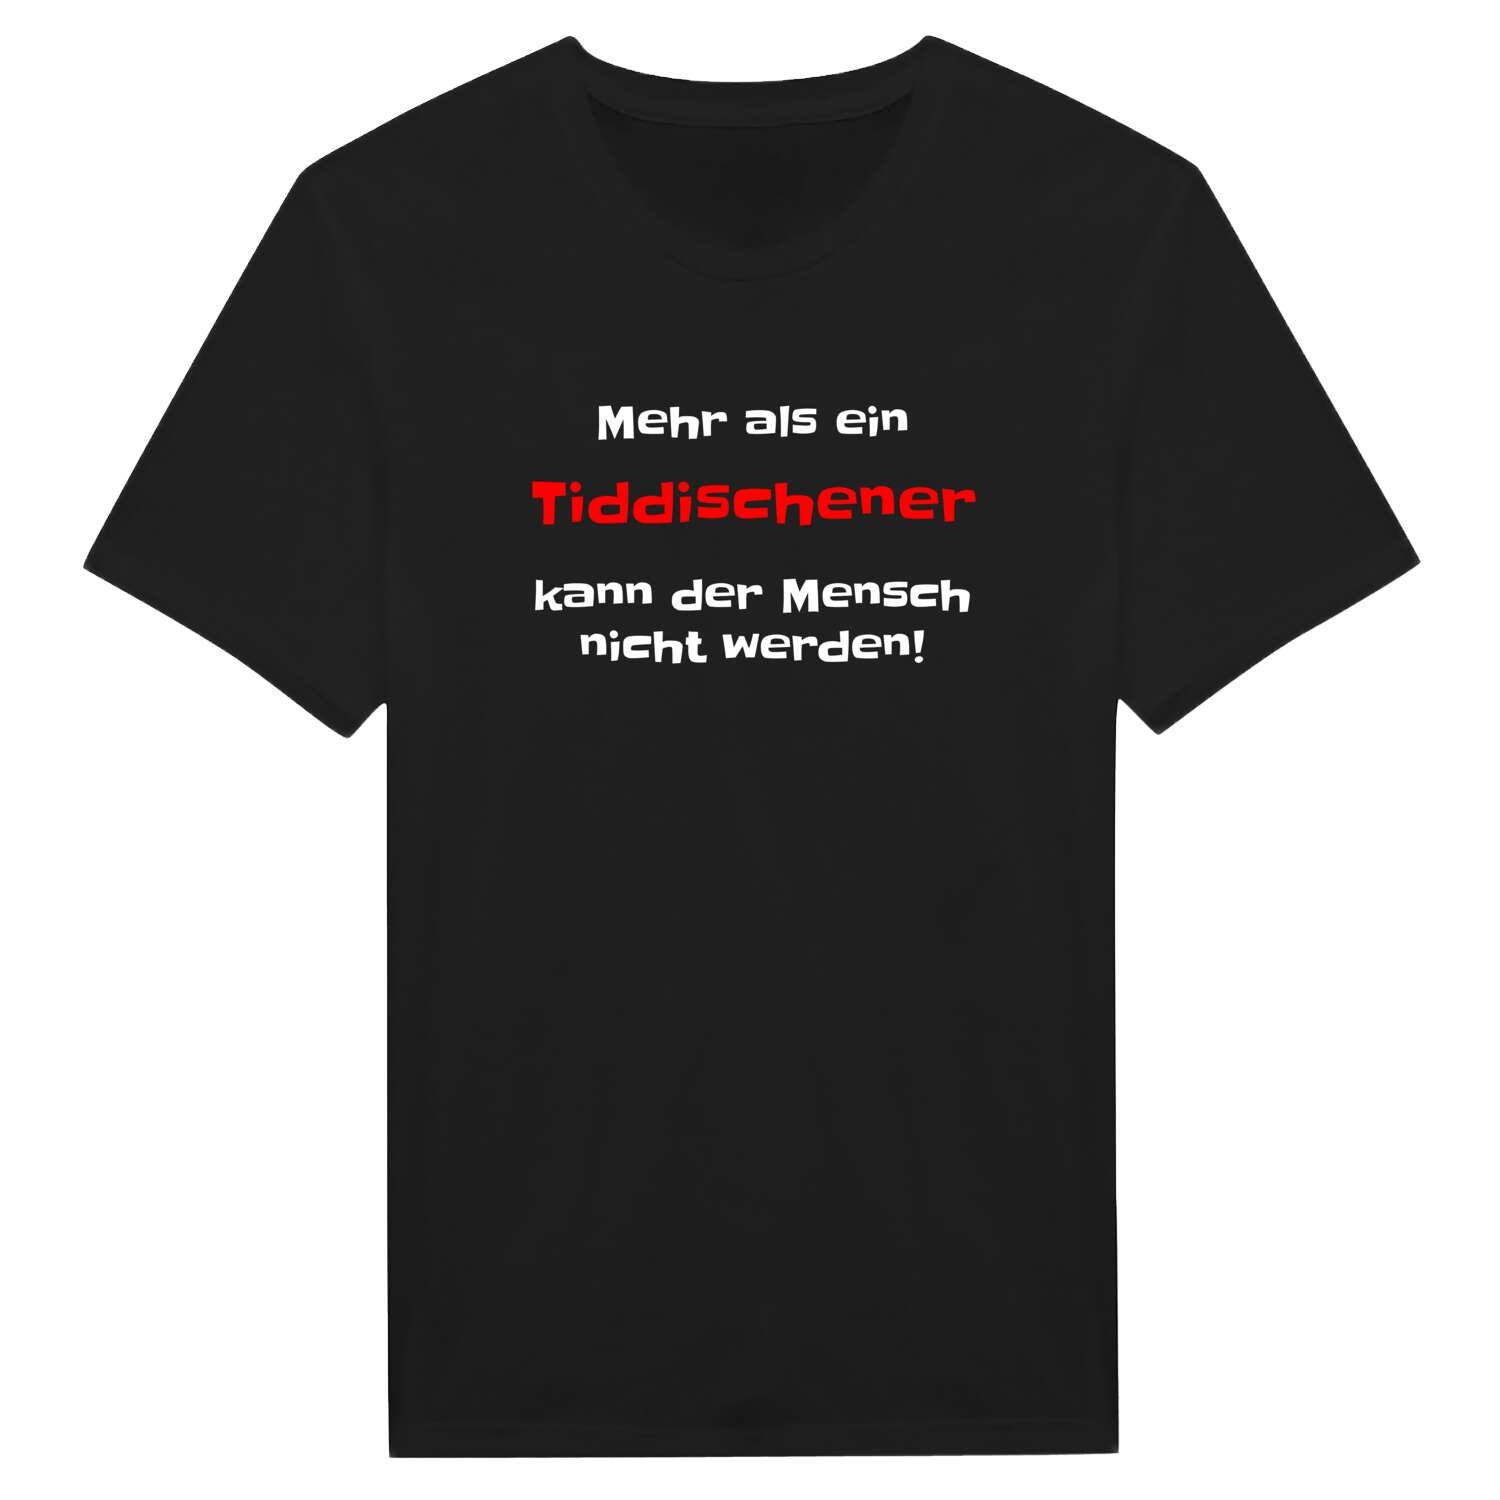 Tiddische T-Shirt »Mehr als ein«